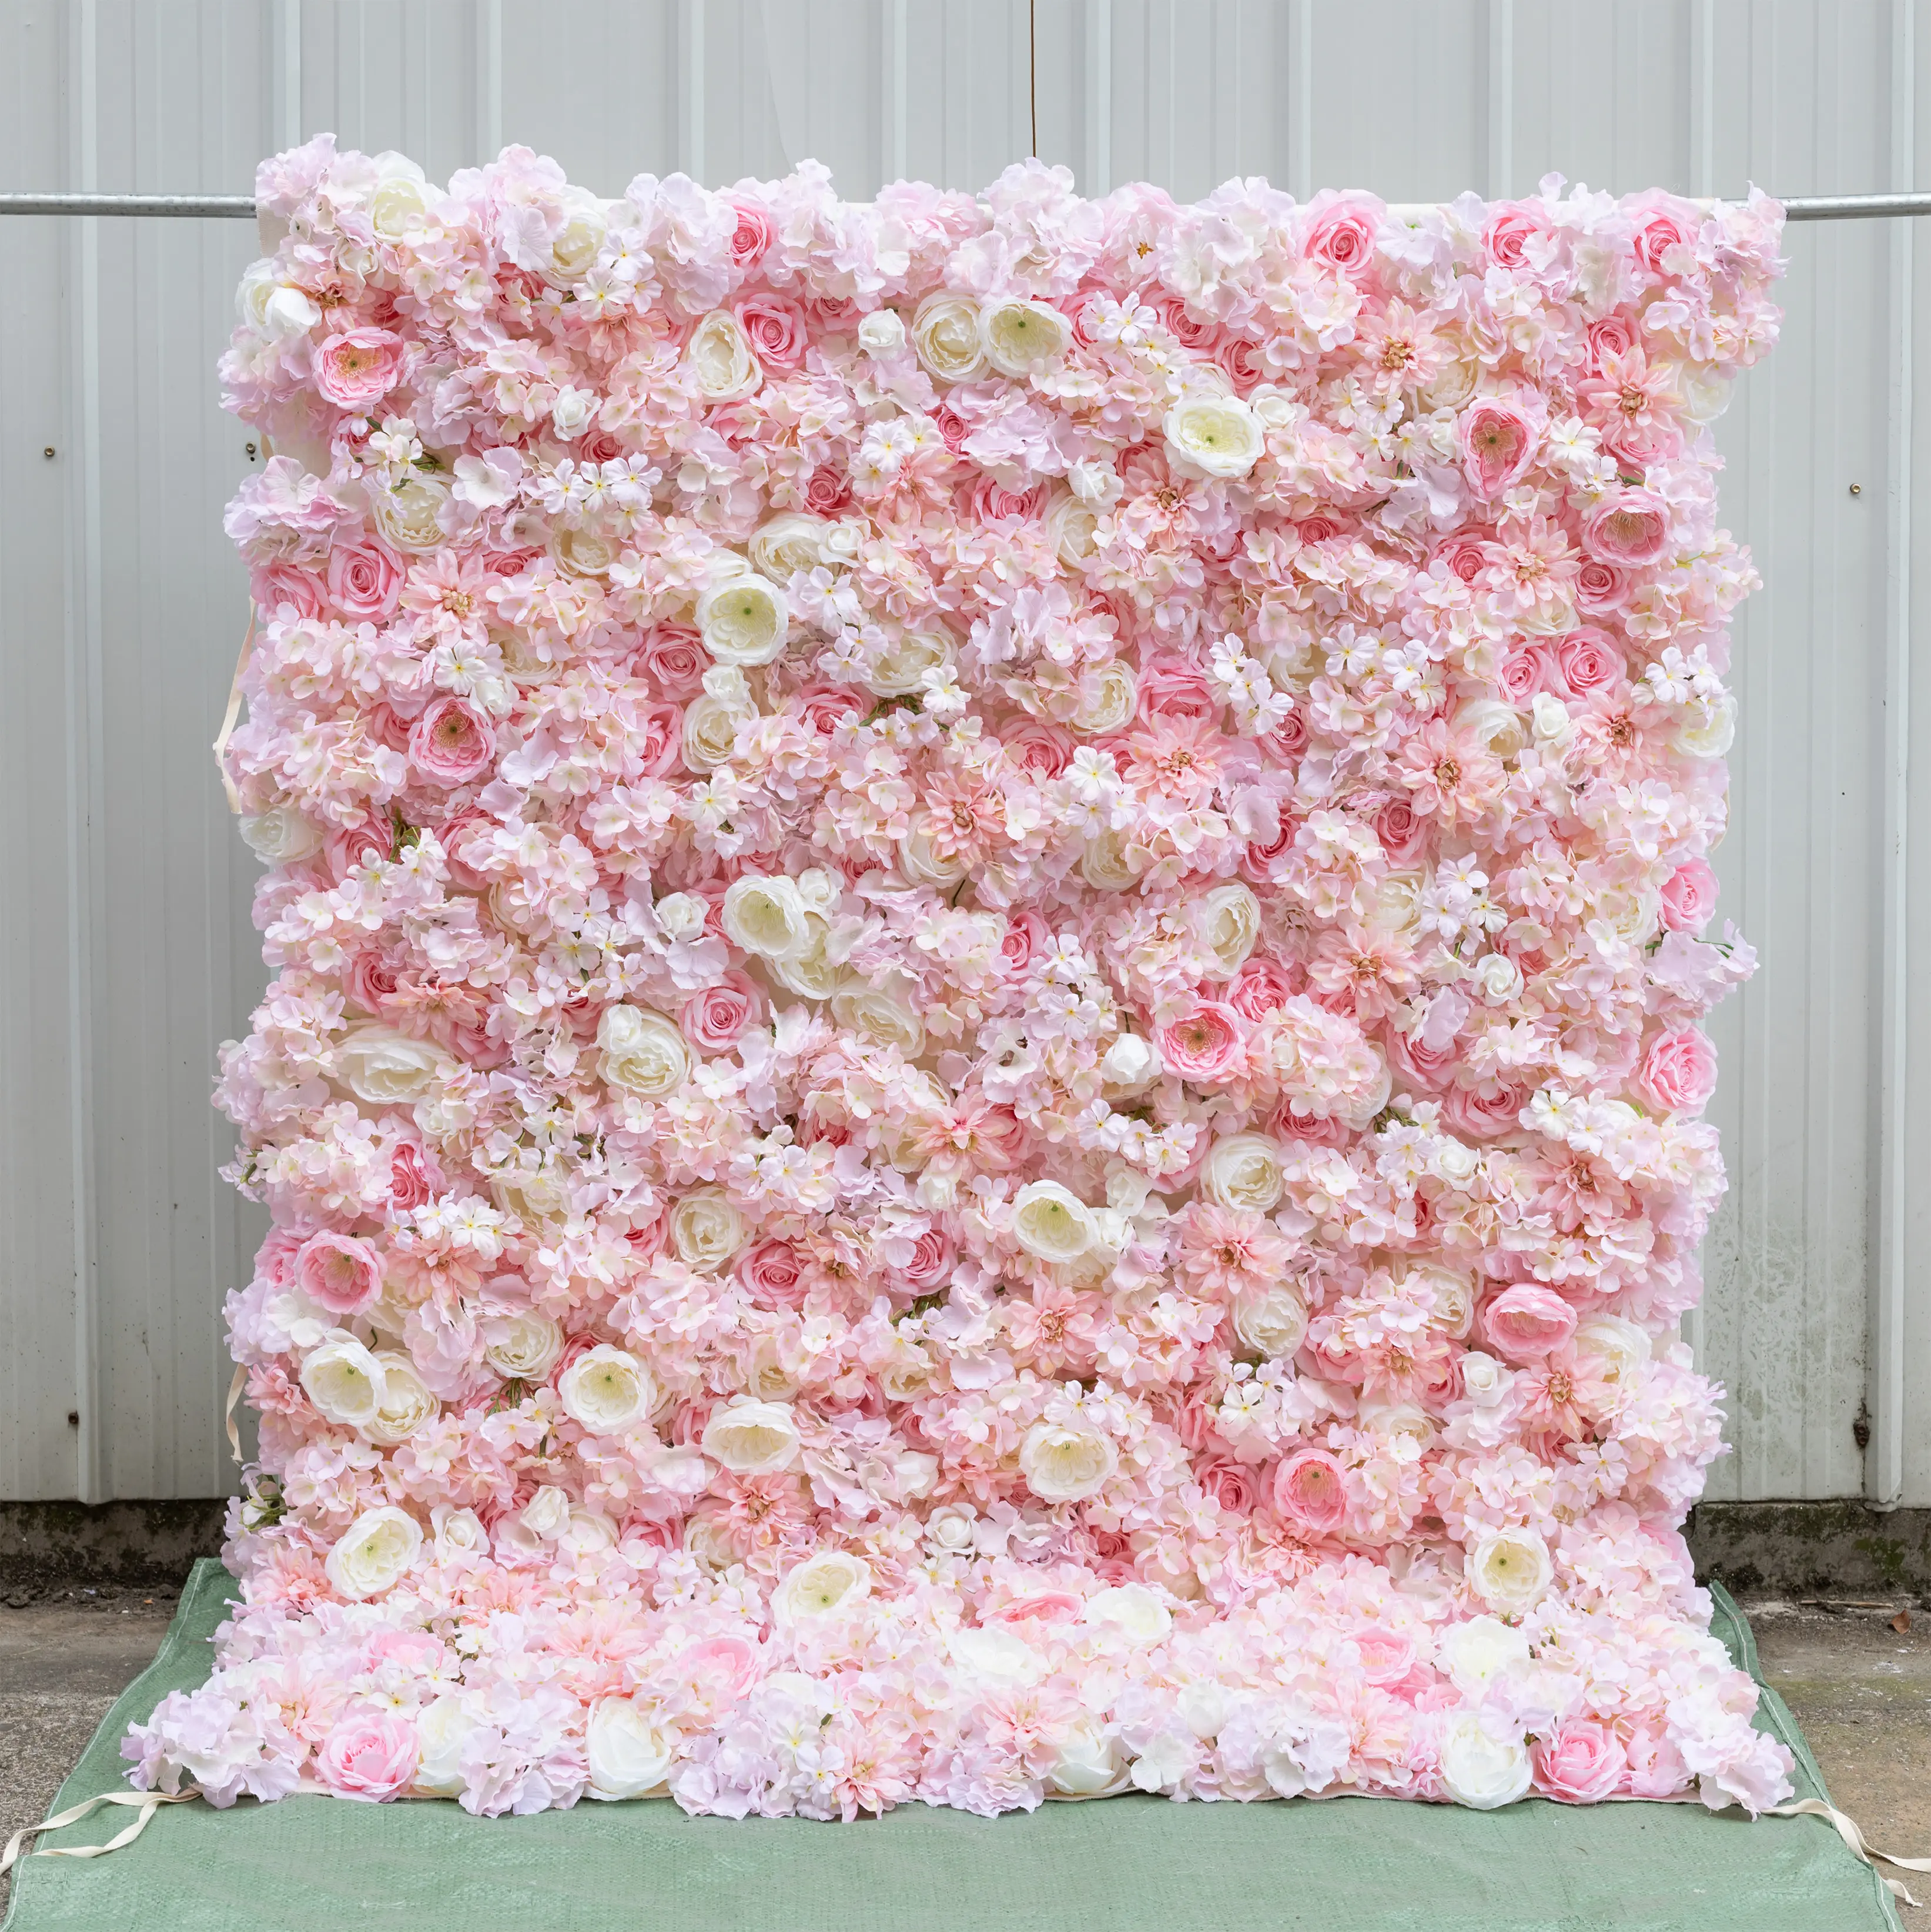 Fondo de pared de boda roja 3D de 8x8 pies, tela artificial enrollada, pared de flores para decoración de boda